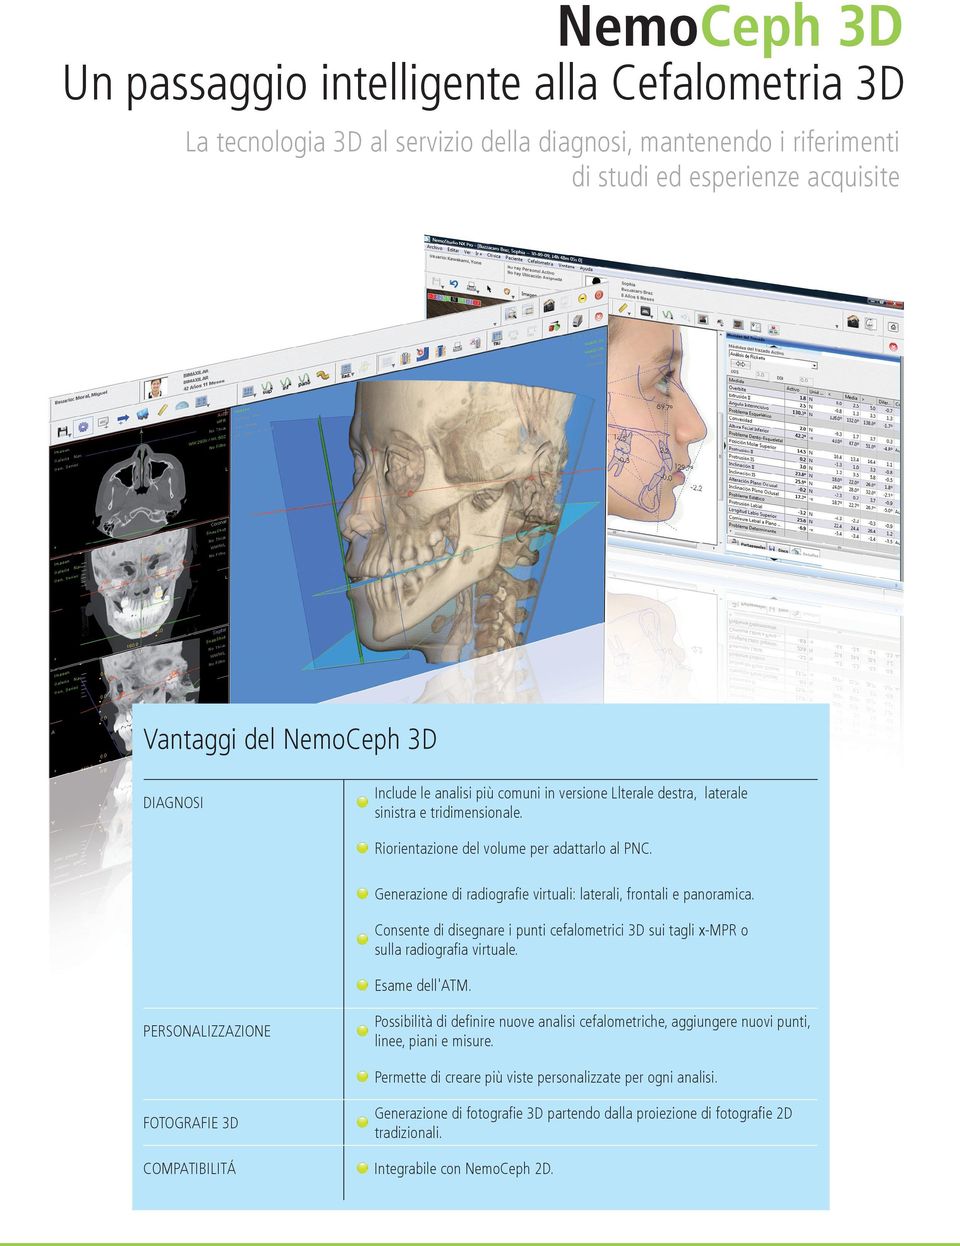 Generazione di radiografie virtuali: laterali, frontali e panoramica. Consente di disegnare i punti cefalometrici 3D sui tagli x-mpr o sulla radiografia virtuale. Esame dell'atm.